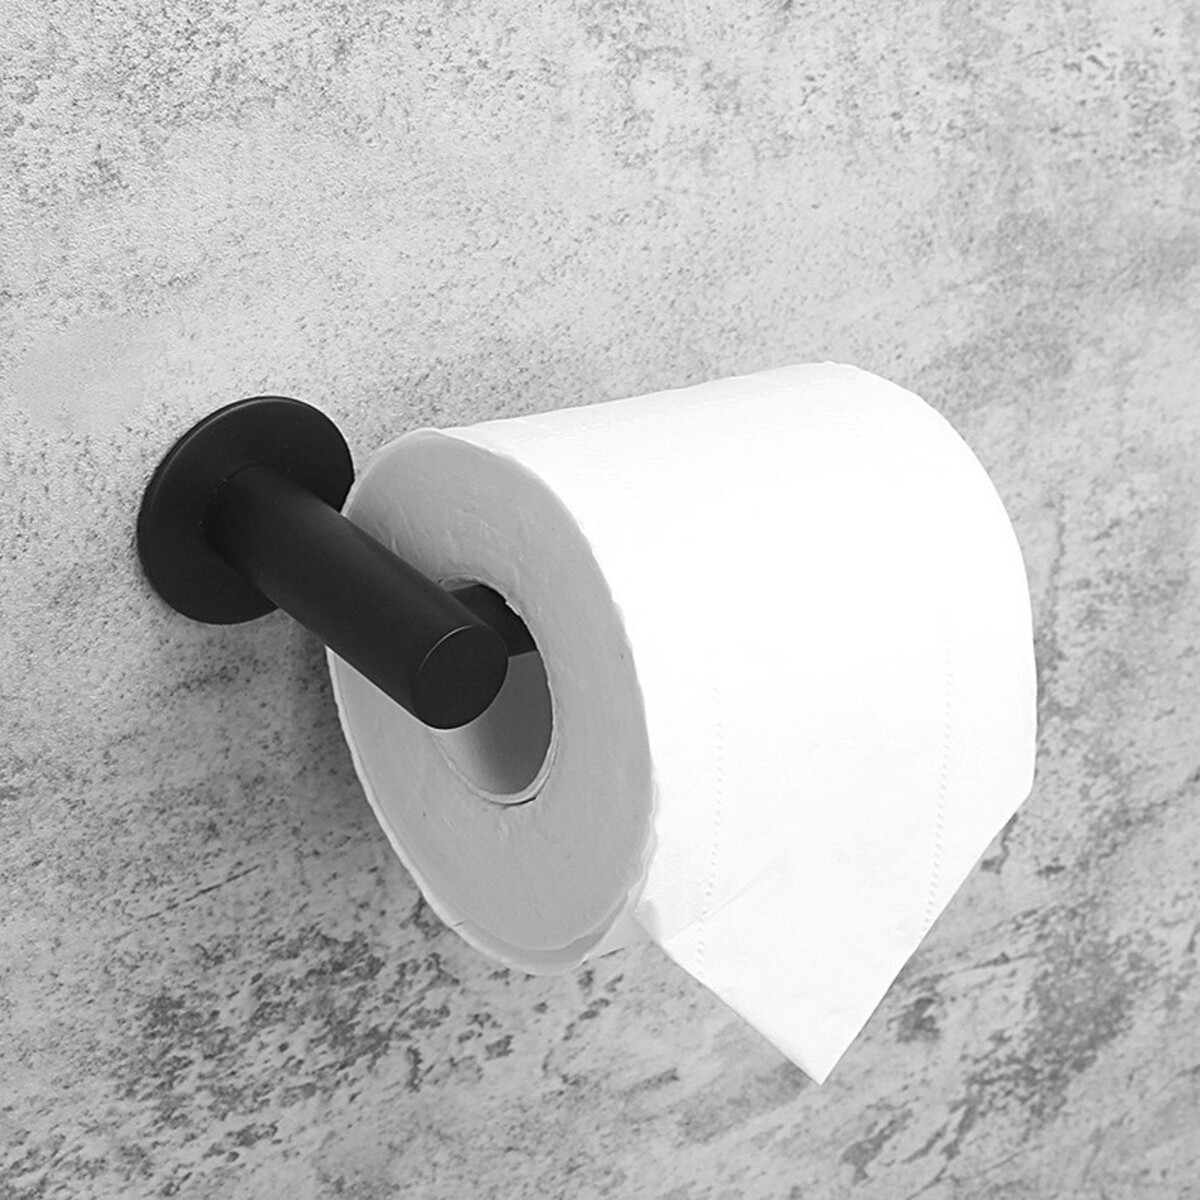 Держатель для туалетной бумаги штольц stölz, 16,2×2,5×9,5 см, нержавеющая сталь, цвет черный держатель для туалетной бумаги штольц stölz hölzern premiere ореховое дерево алюминий коричневый